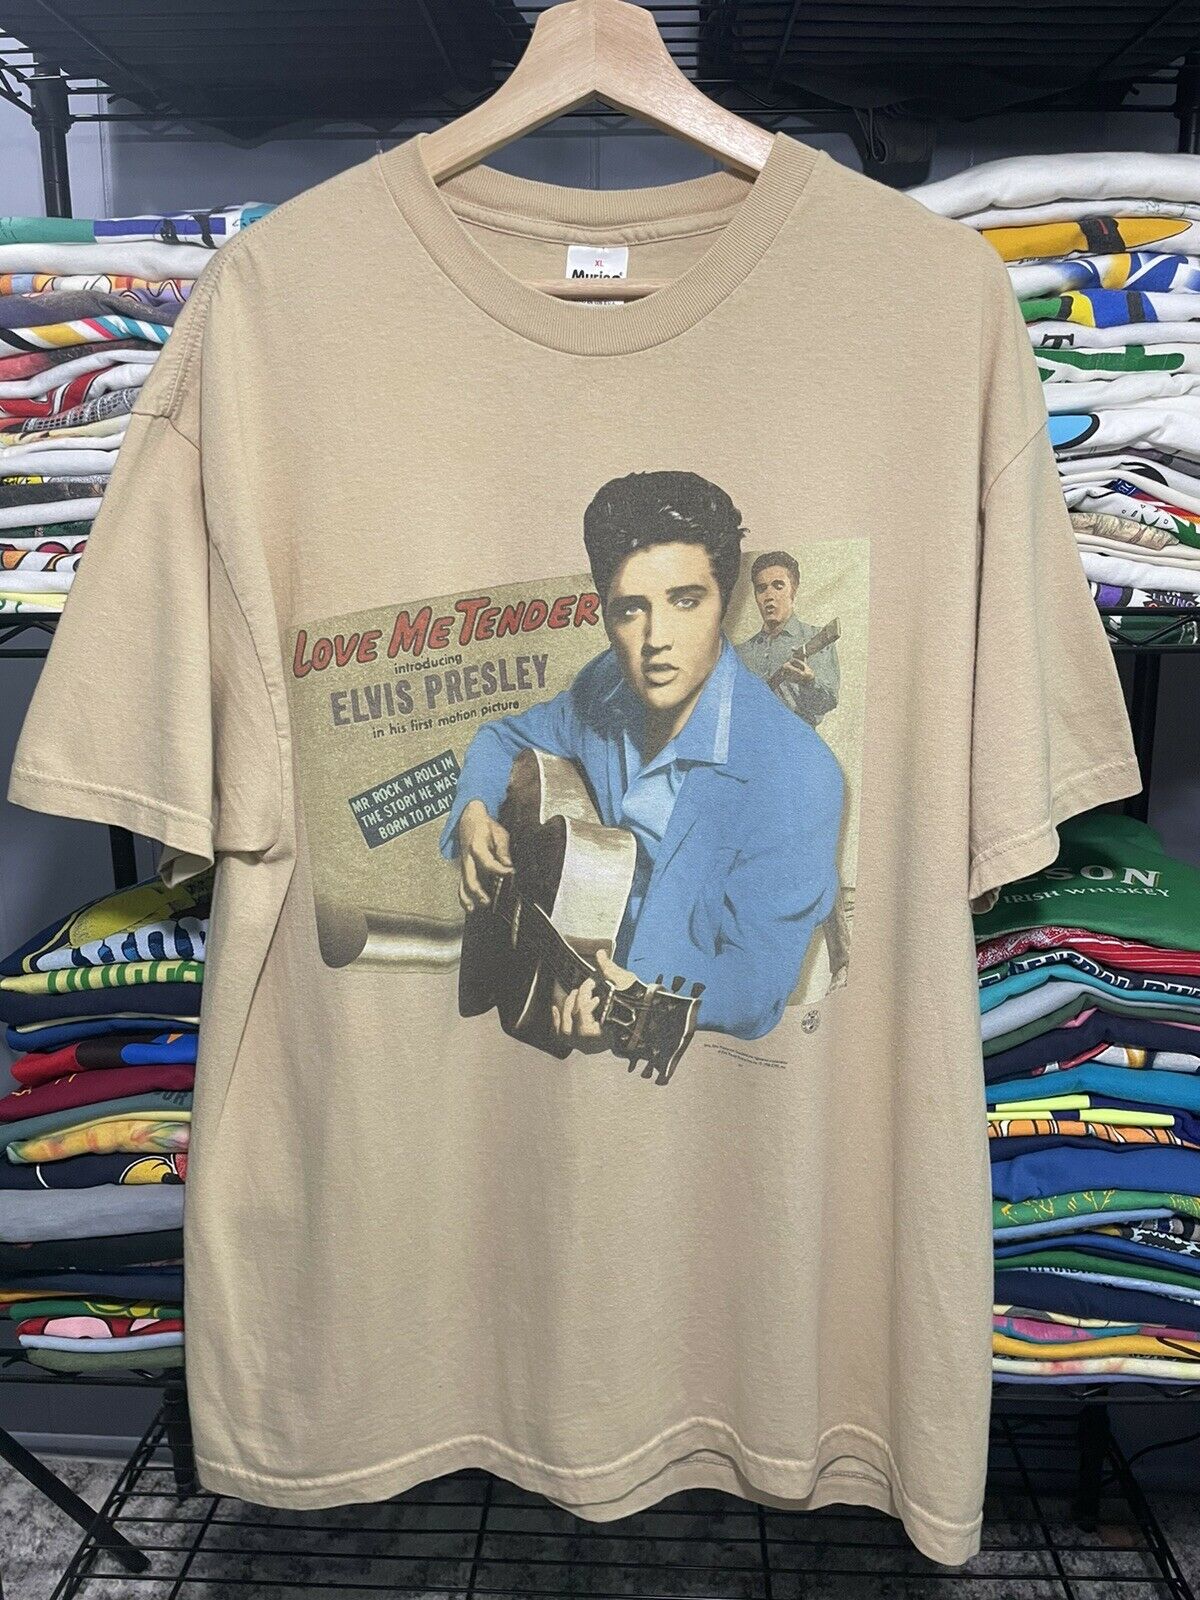 Vintage 1998 Elvis Presley “love Me Tender” Rock & Roll T-shirt